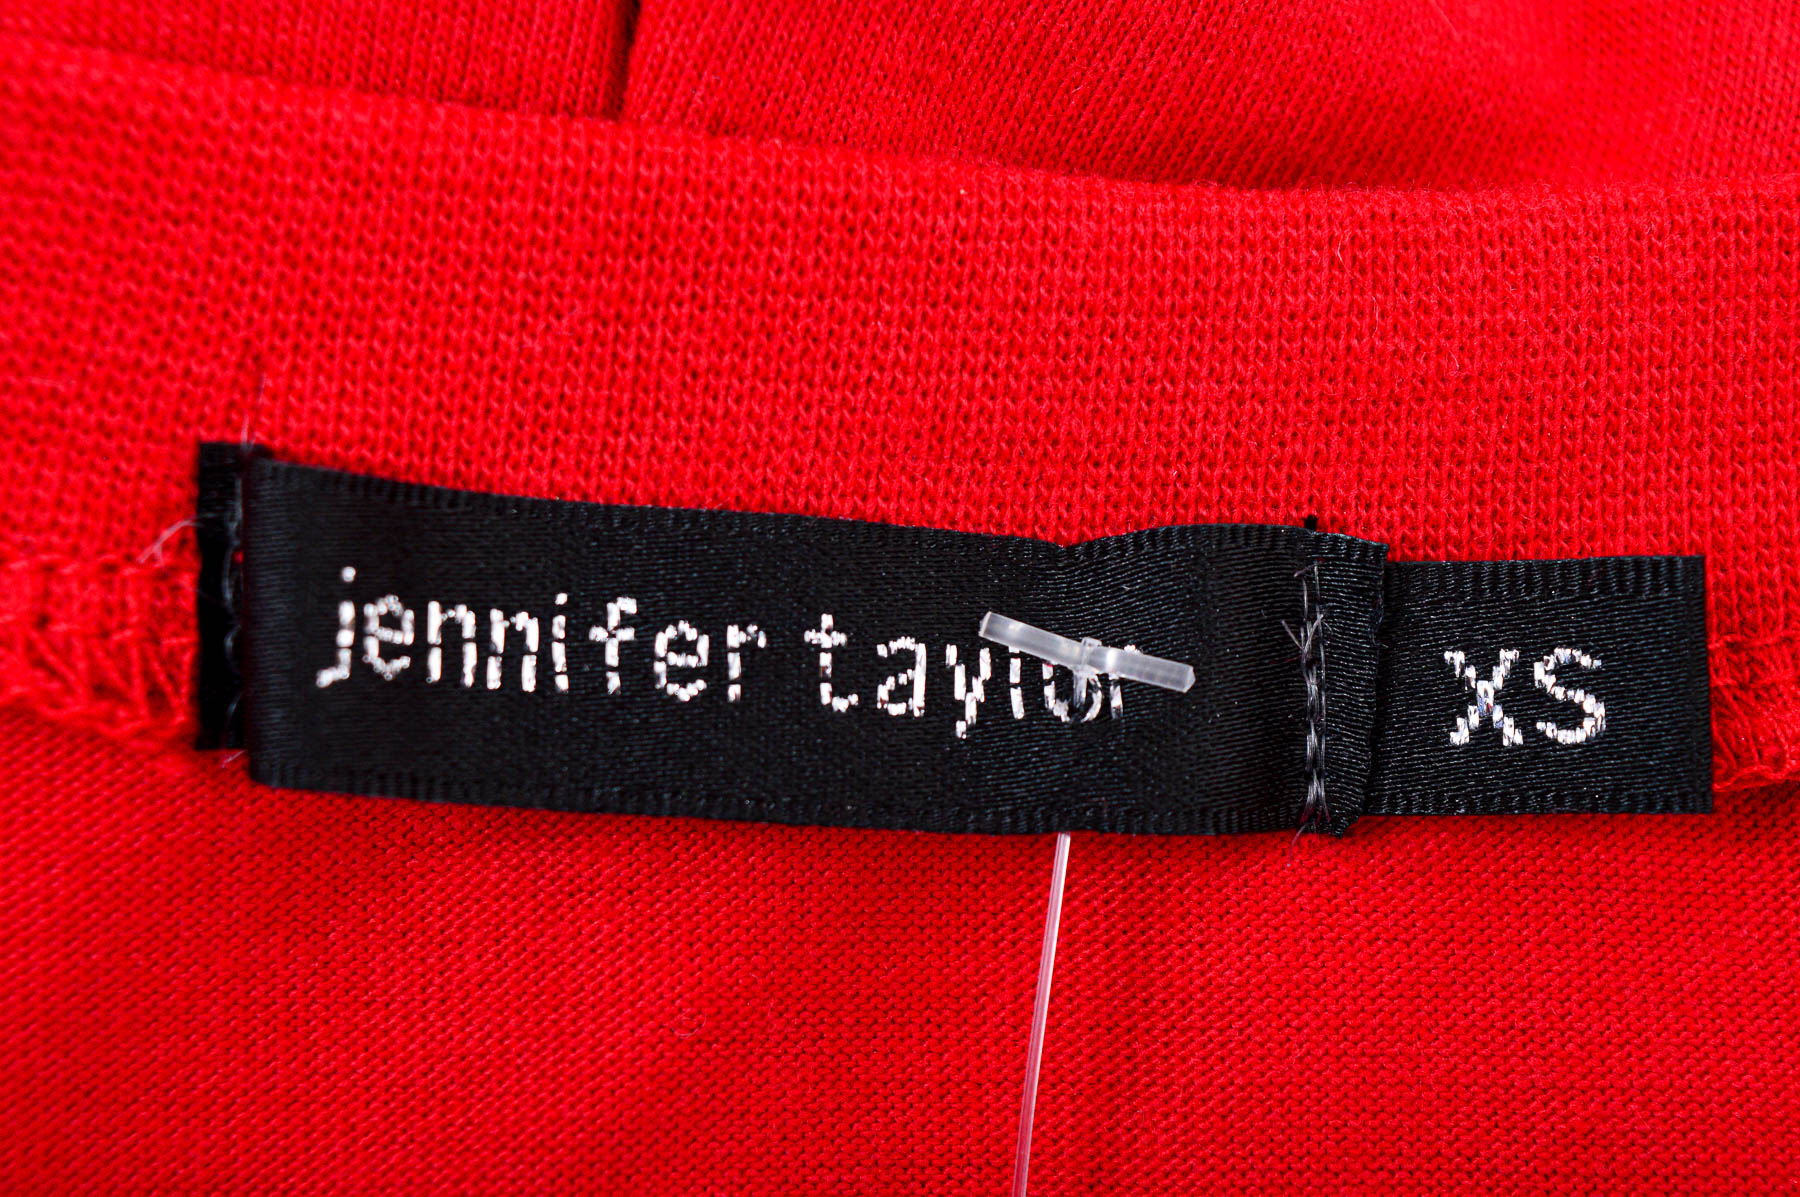 Ένα φόρεμα - Jenifer Taylor - 2